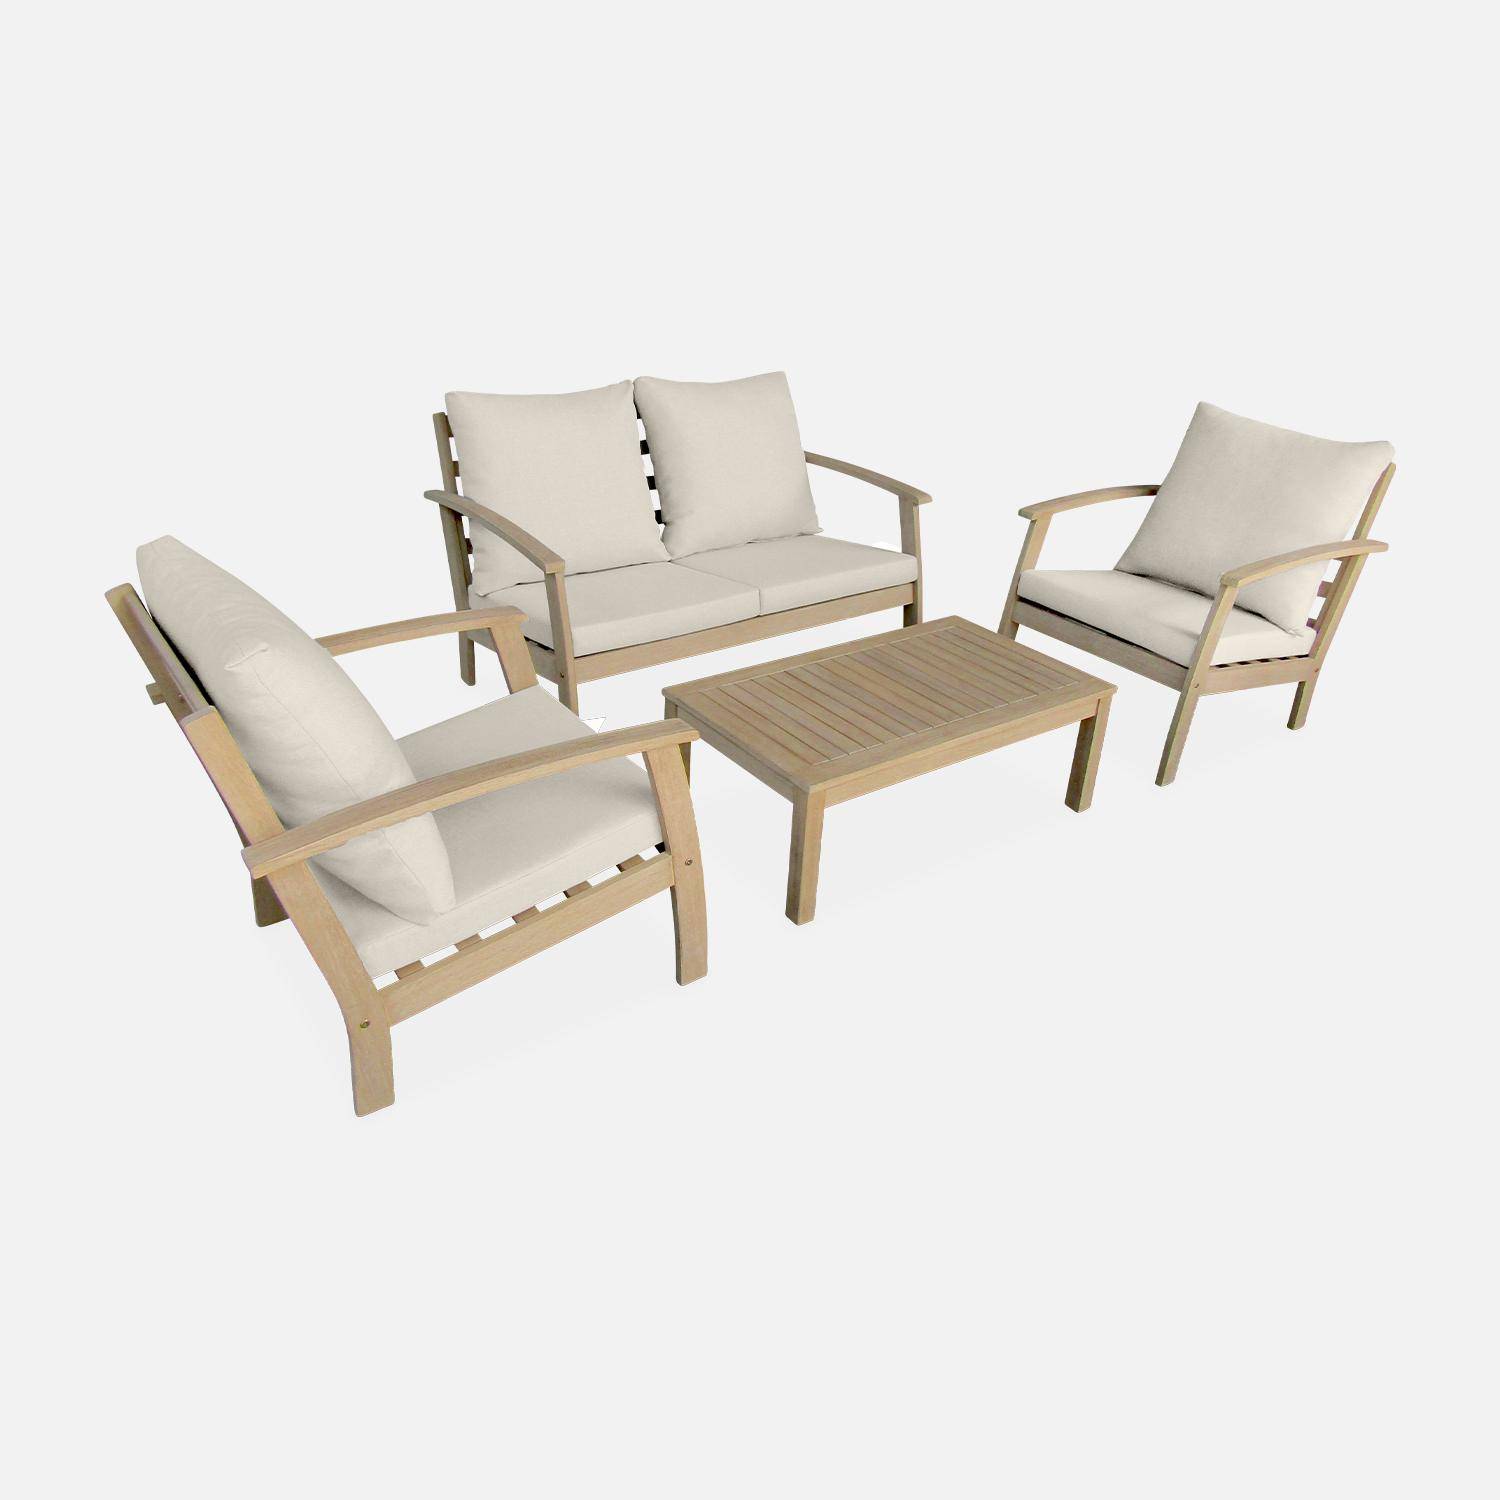 Salon de jardin en bois 4 places - Ushuaïa - Coussins beiges, canapé, fauteuils et table basse en acacia, design Photo1